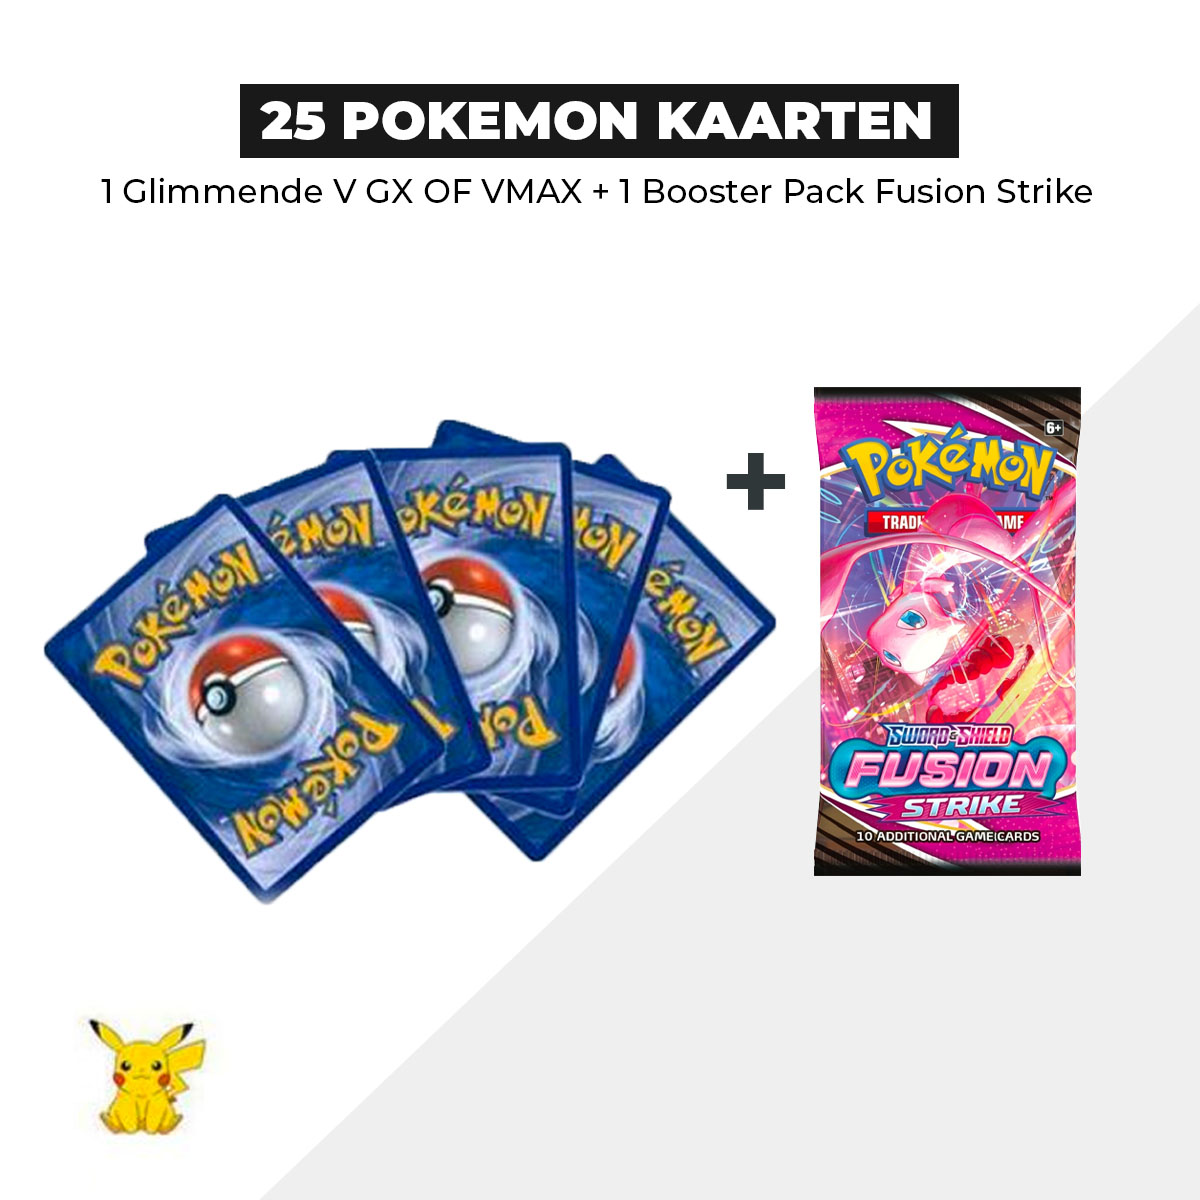 25 Pokémon Kaarten Bundel + 1 Fusion strike Booster pack